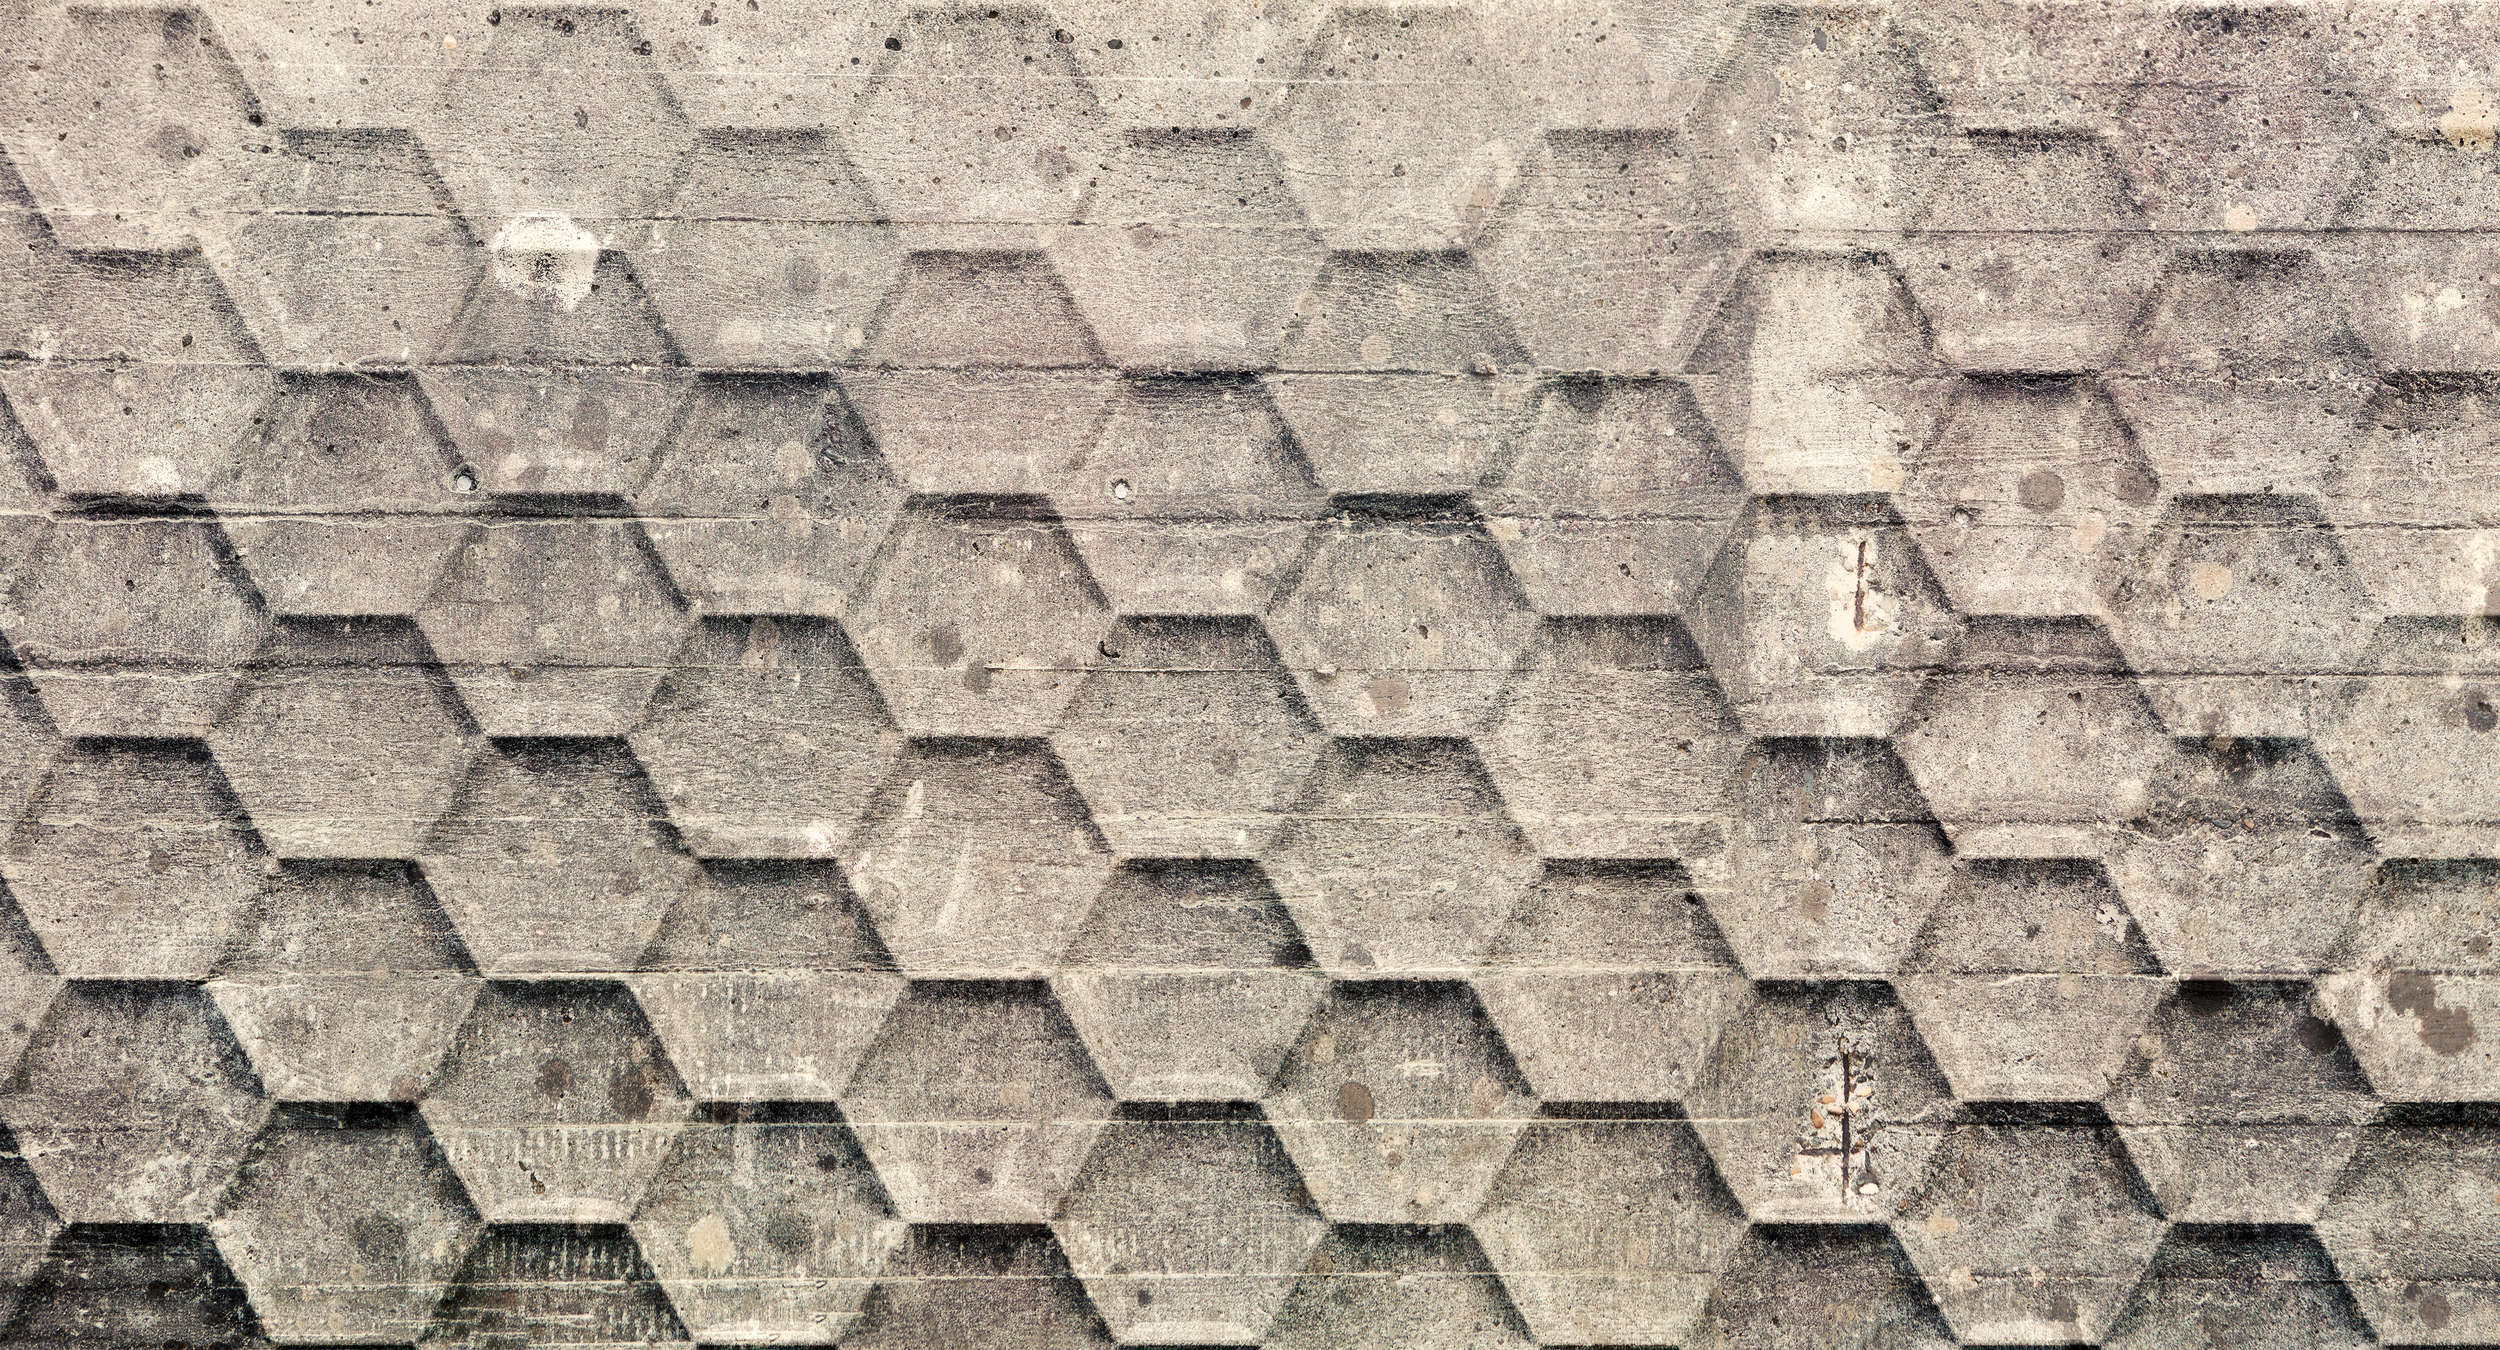             Papier peint béton avec motif géométrique en nid d'abeille - gris, beige, blanc
        